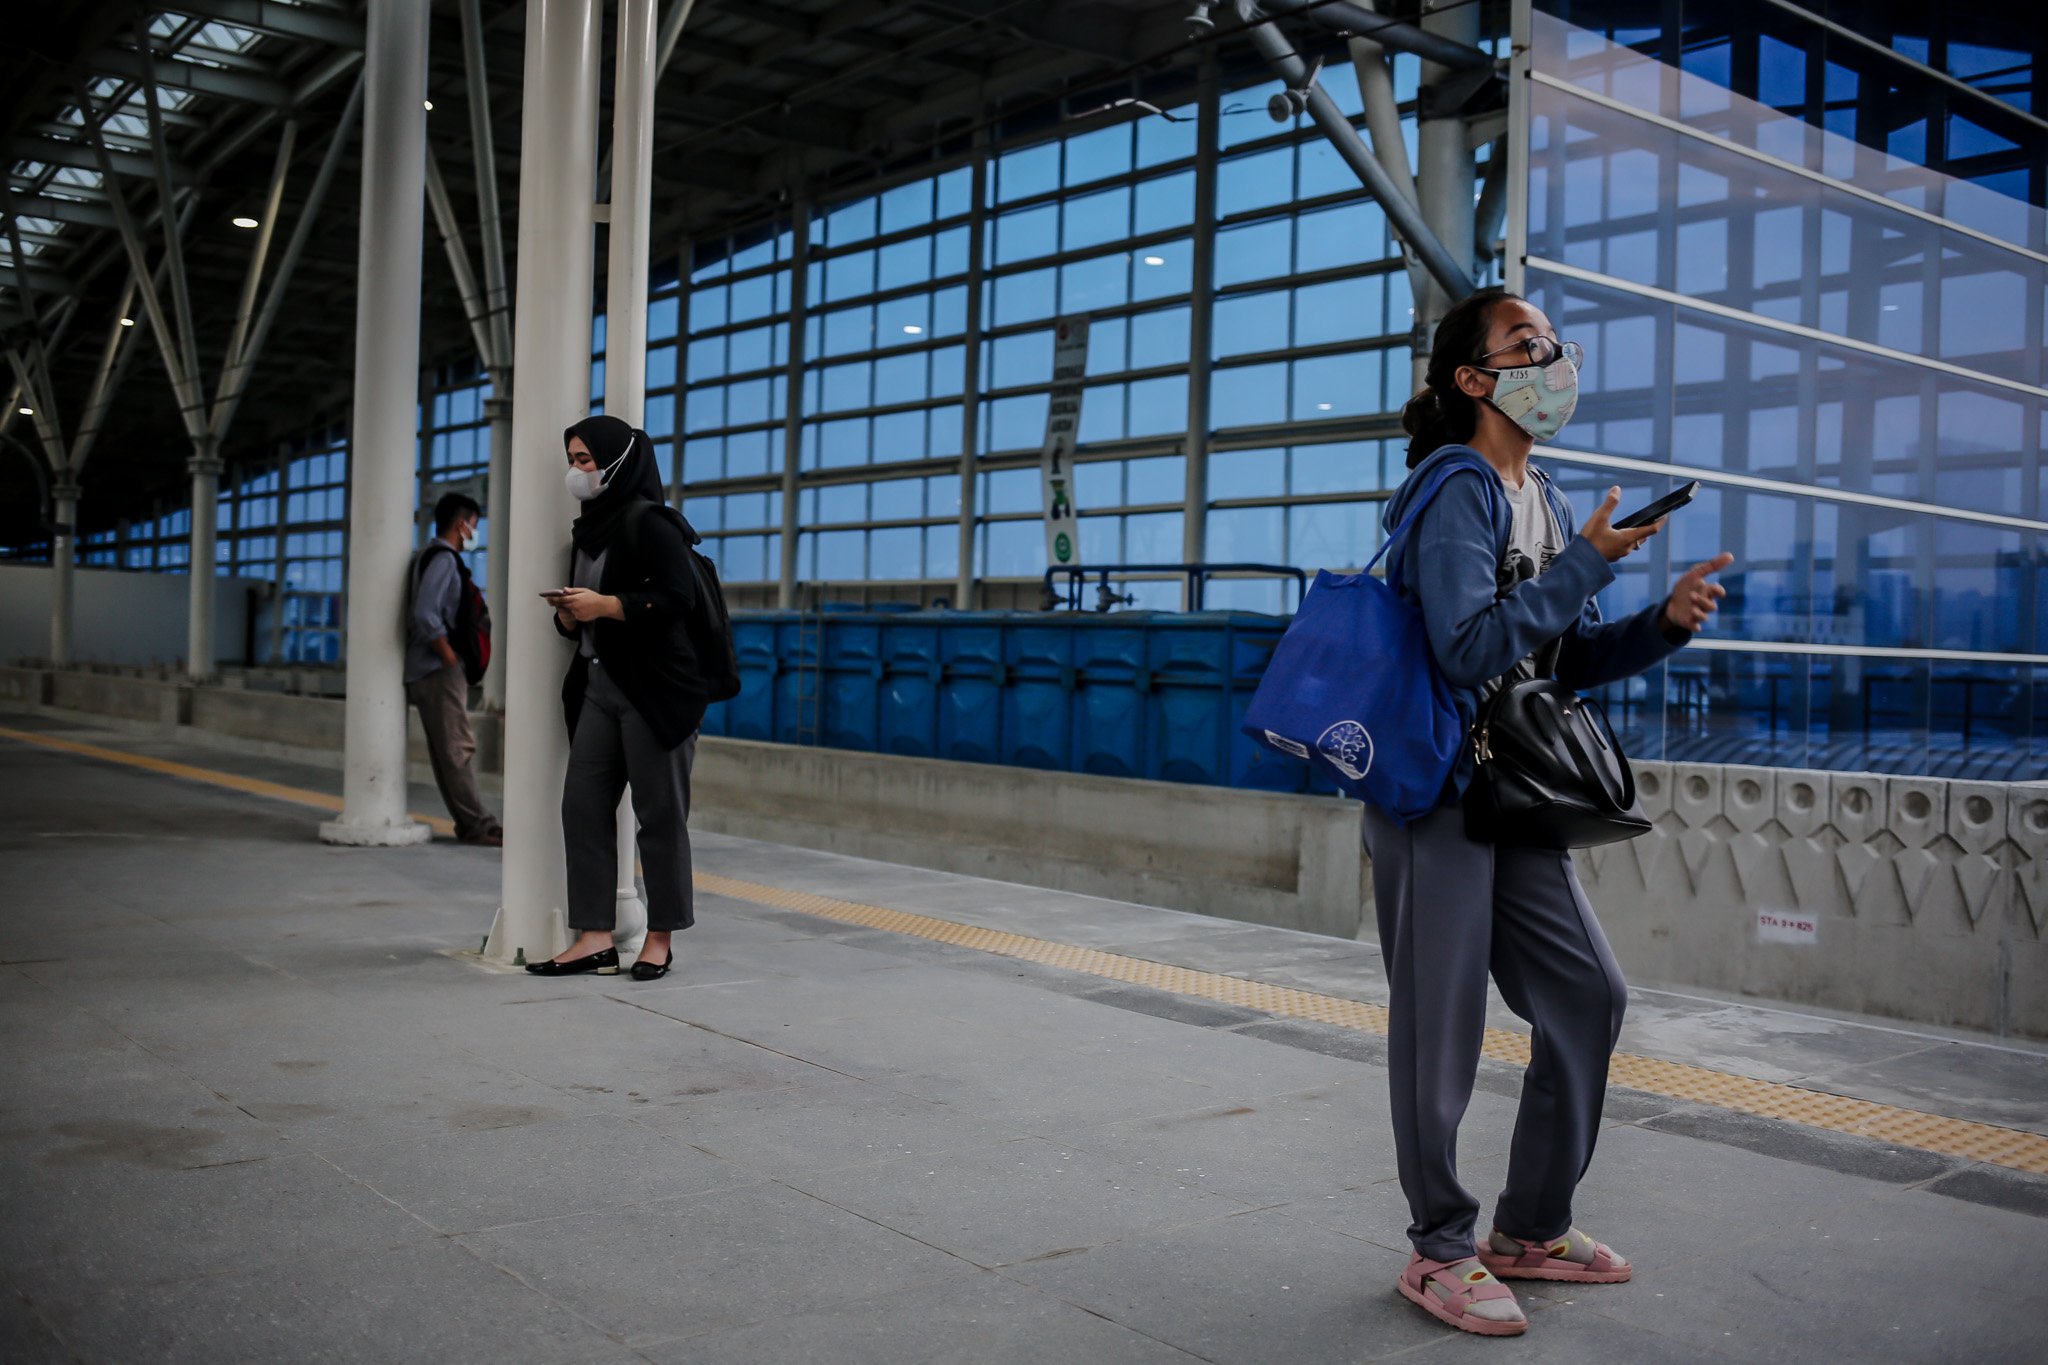 Calon penumpang menuggu di peron jalur layang (elevated track) di Stasiun Manggarai, Jakarta, Kamis (30/9/2021). Jalur layang Bogor Line di Stasiun Manggarai telah beroperasi yang terdiri dari empat peron bagi penumpang KRL Commuter Line relasi Jakarta-Bogor, Hingga hari ini, progres konstruksi Stasiun Manggarai sudah mencapai 90,3 persen.